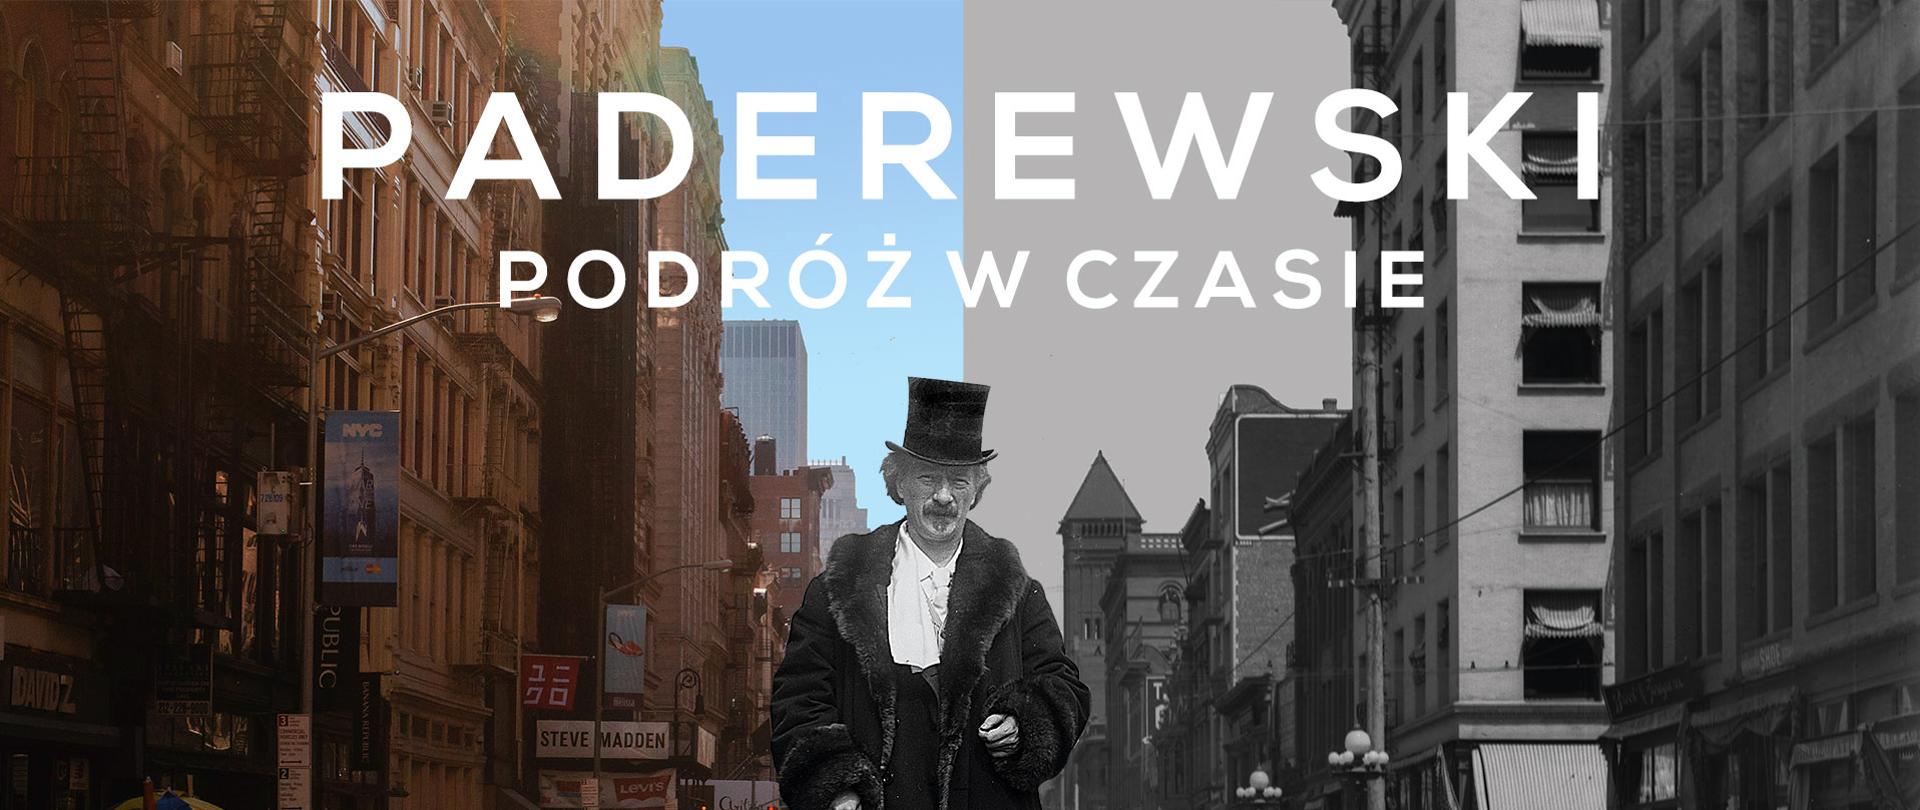 160. rocznica urodzin I. J. Paderewskiego – wystawa plenerowa i koncert online
